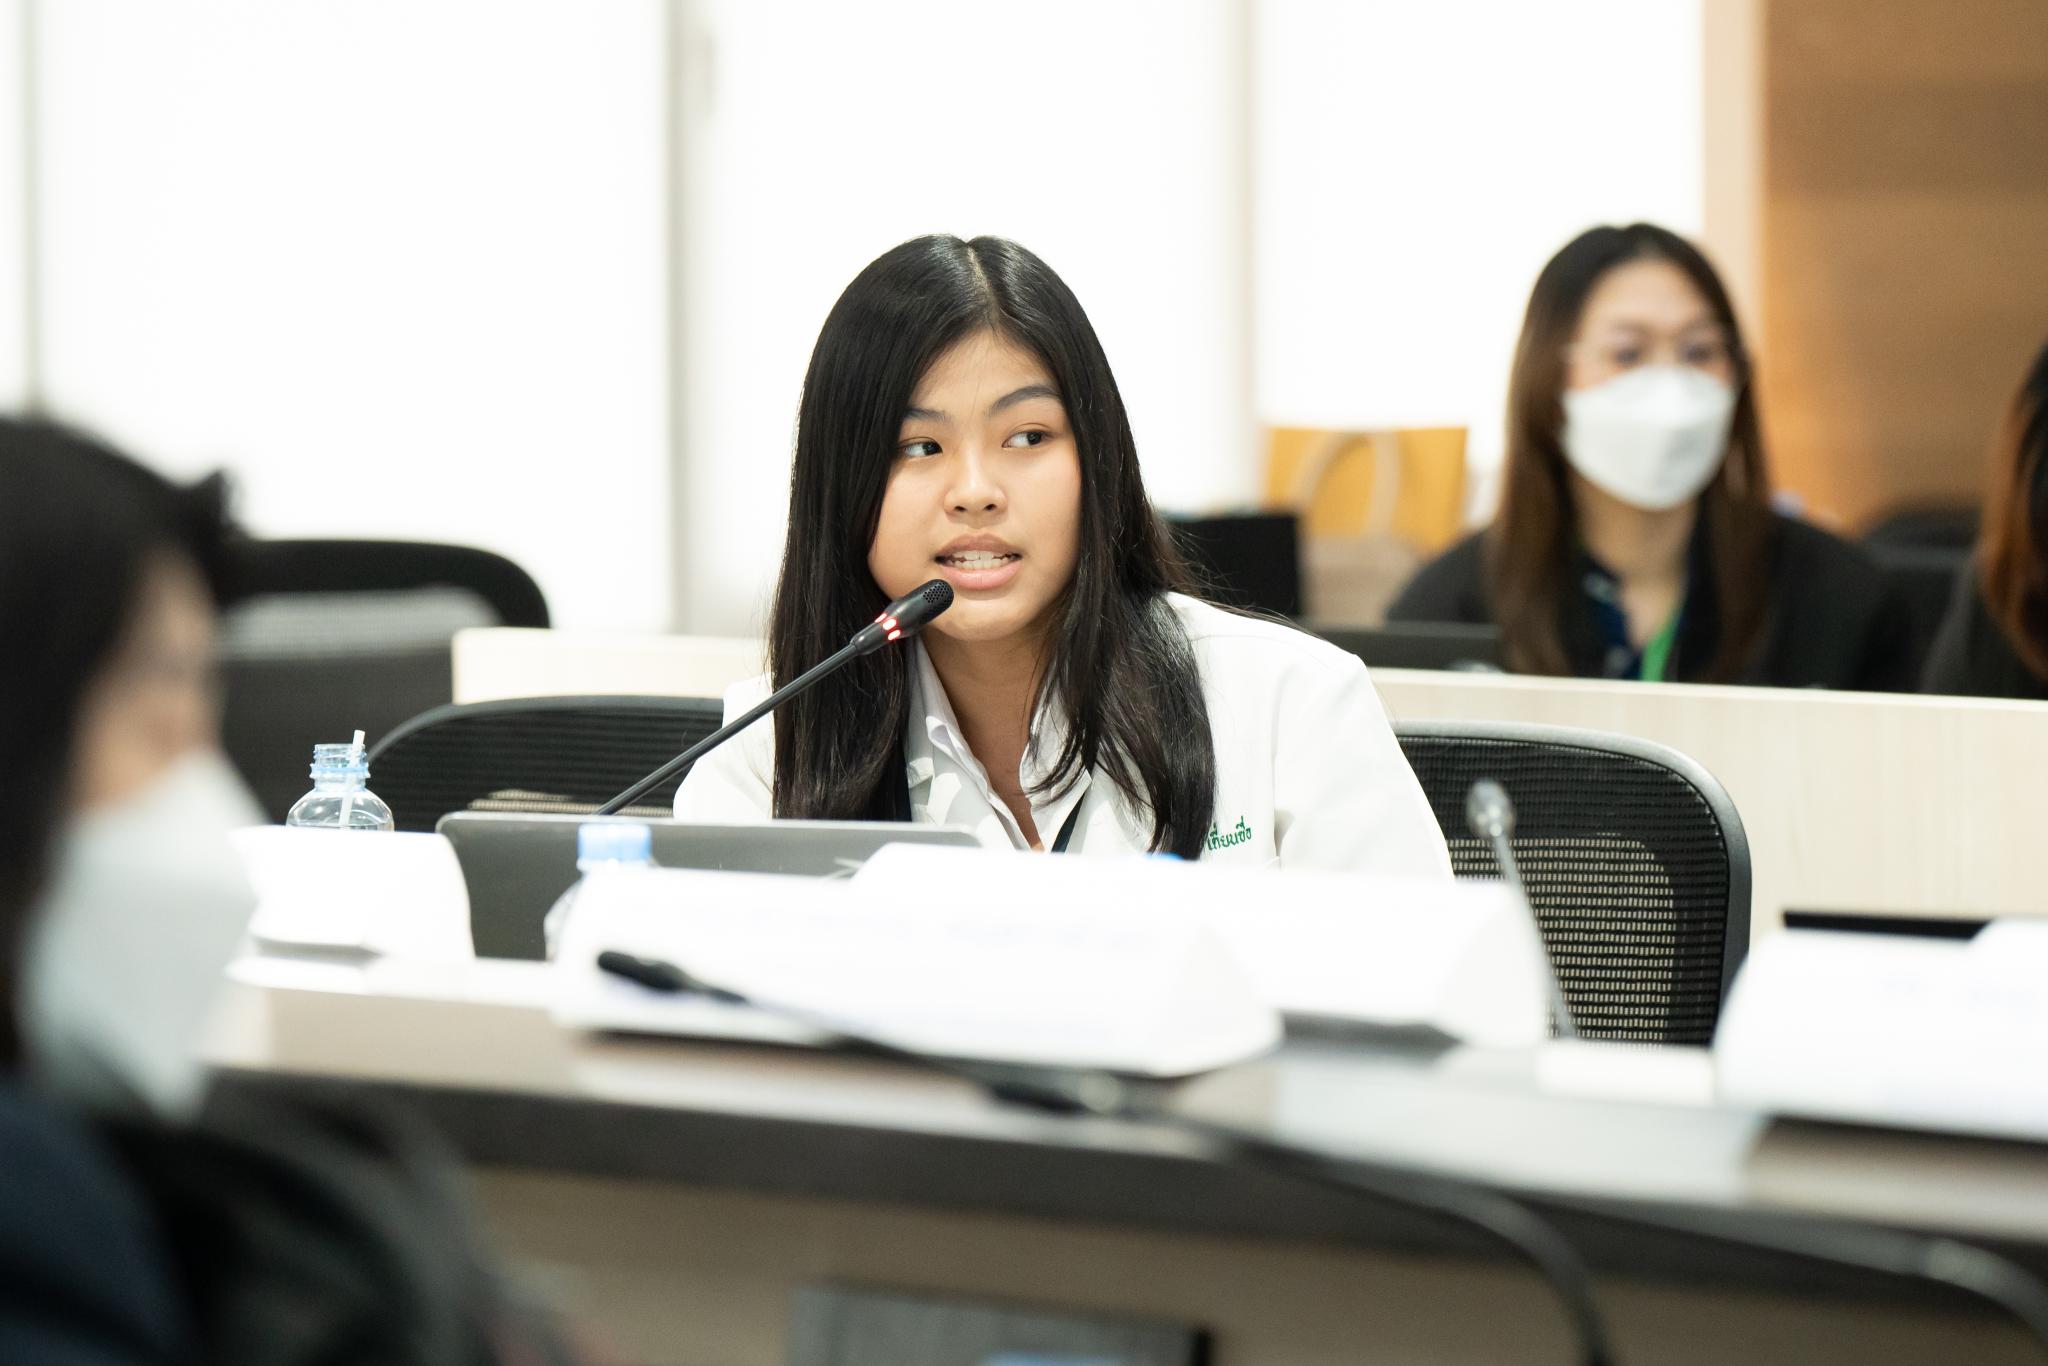 ประชุมกลุ่มสถาบันแพทยศาสตร์แห่งประเทศไทย ครั้งที่ 6 ประจำปี 2566